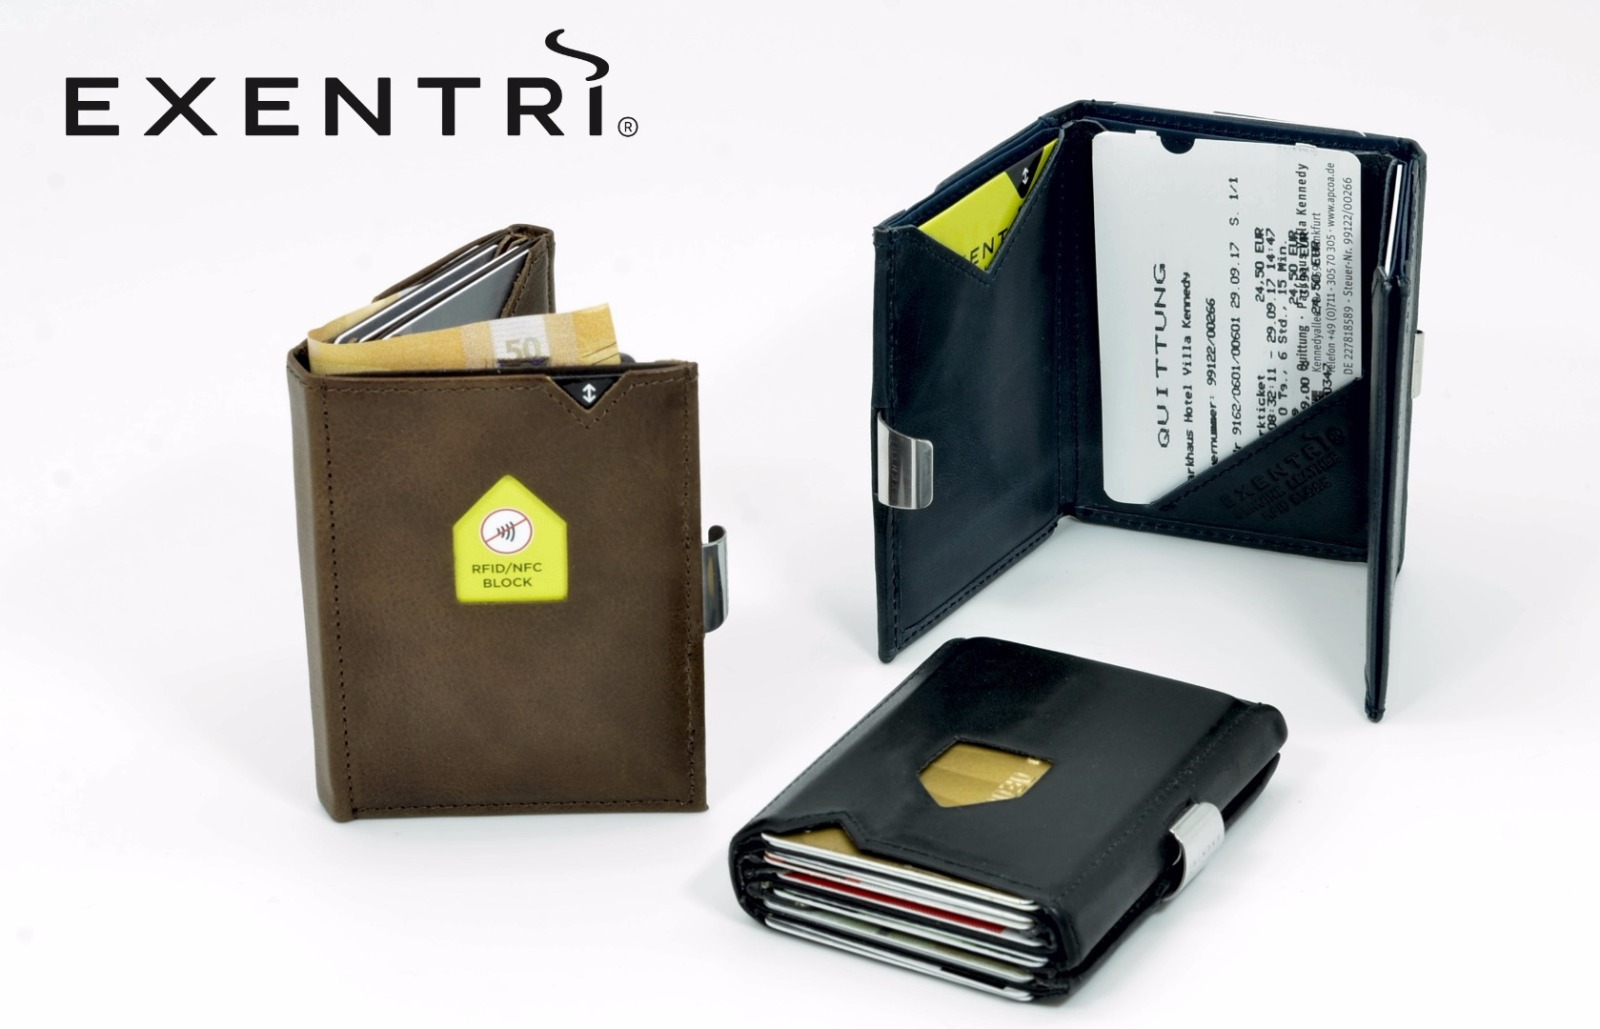 Exentri Wallet - Emerald Green - Mit RFID Schutz 5